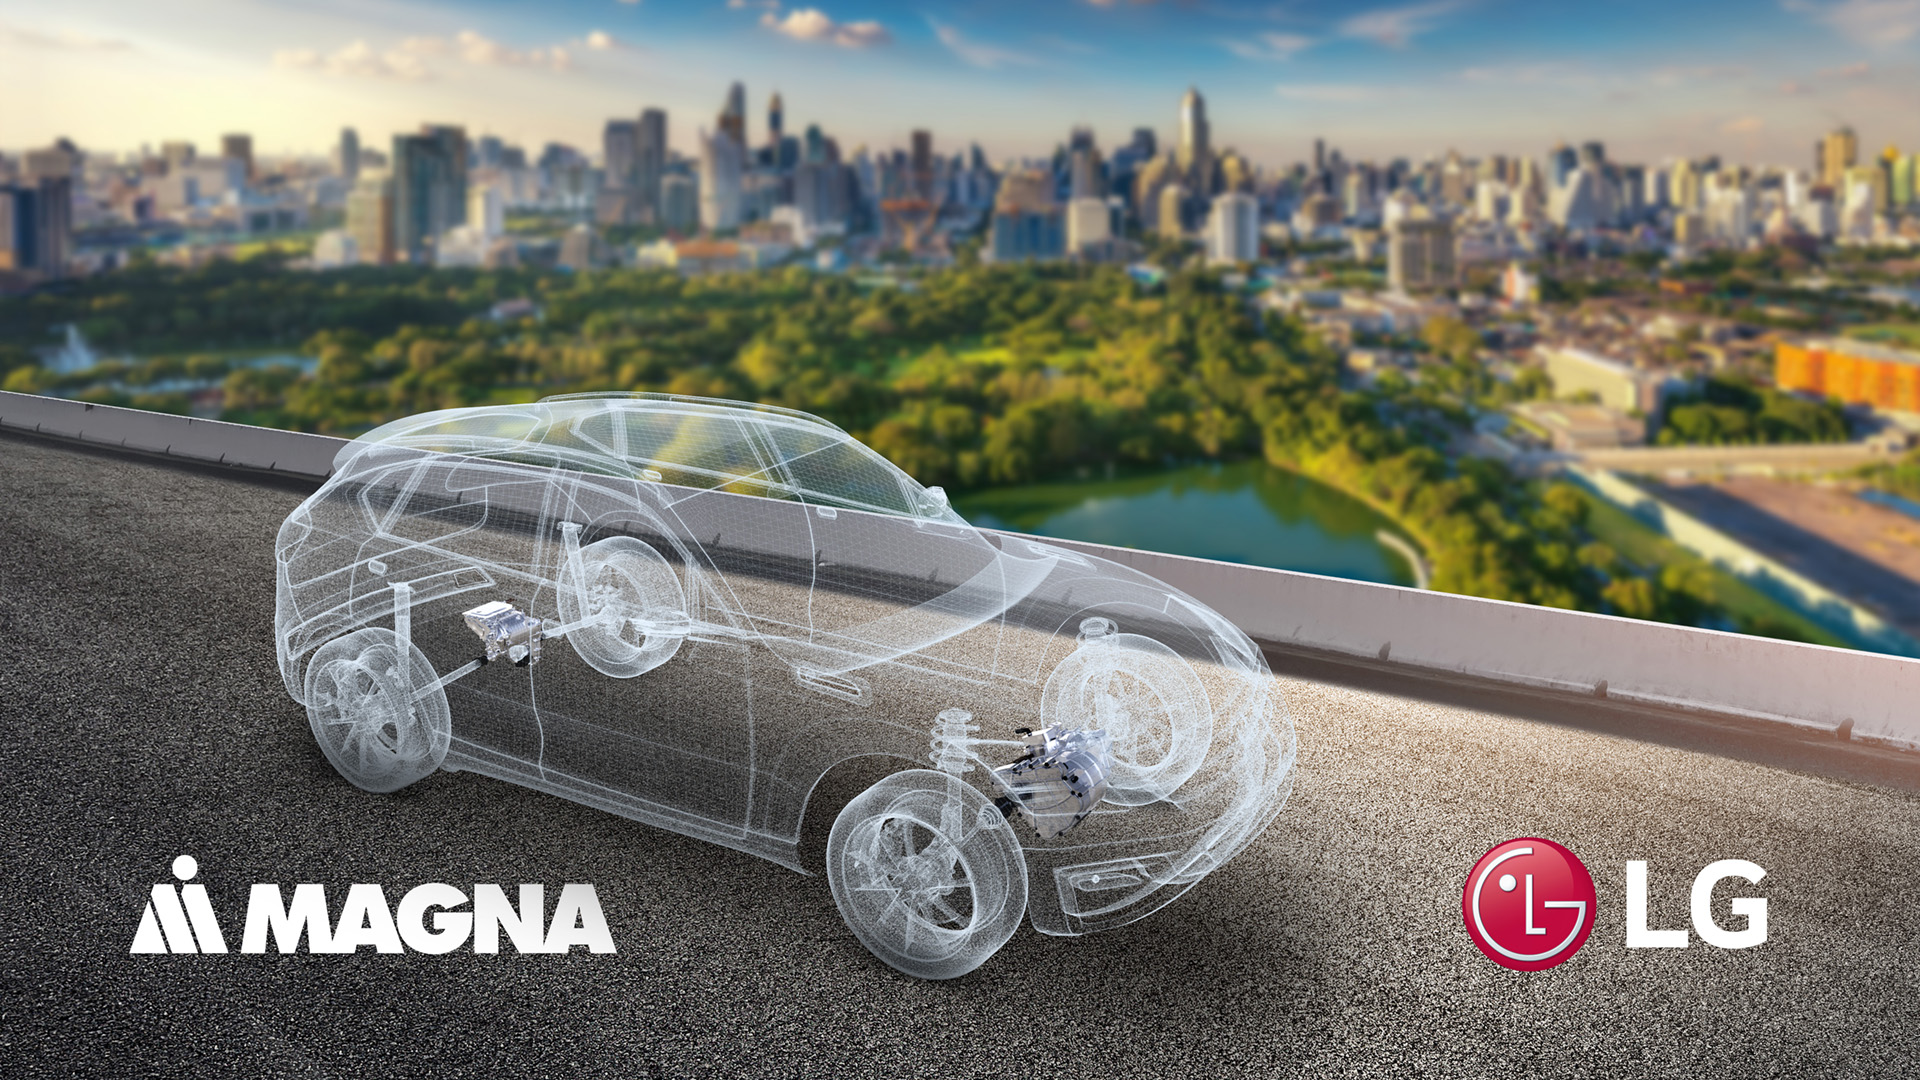 LG Magna samochód elektryczny (źródło: LG)